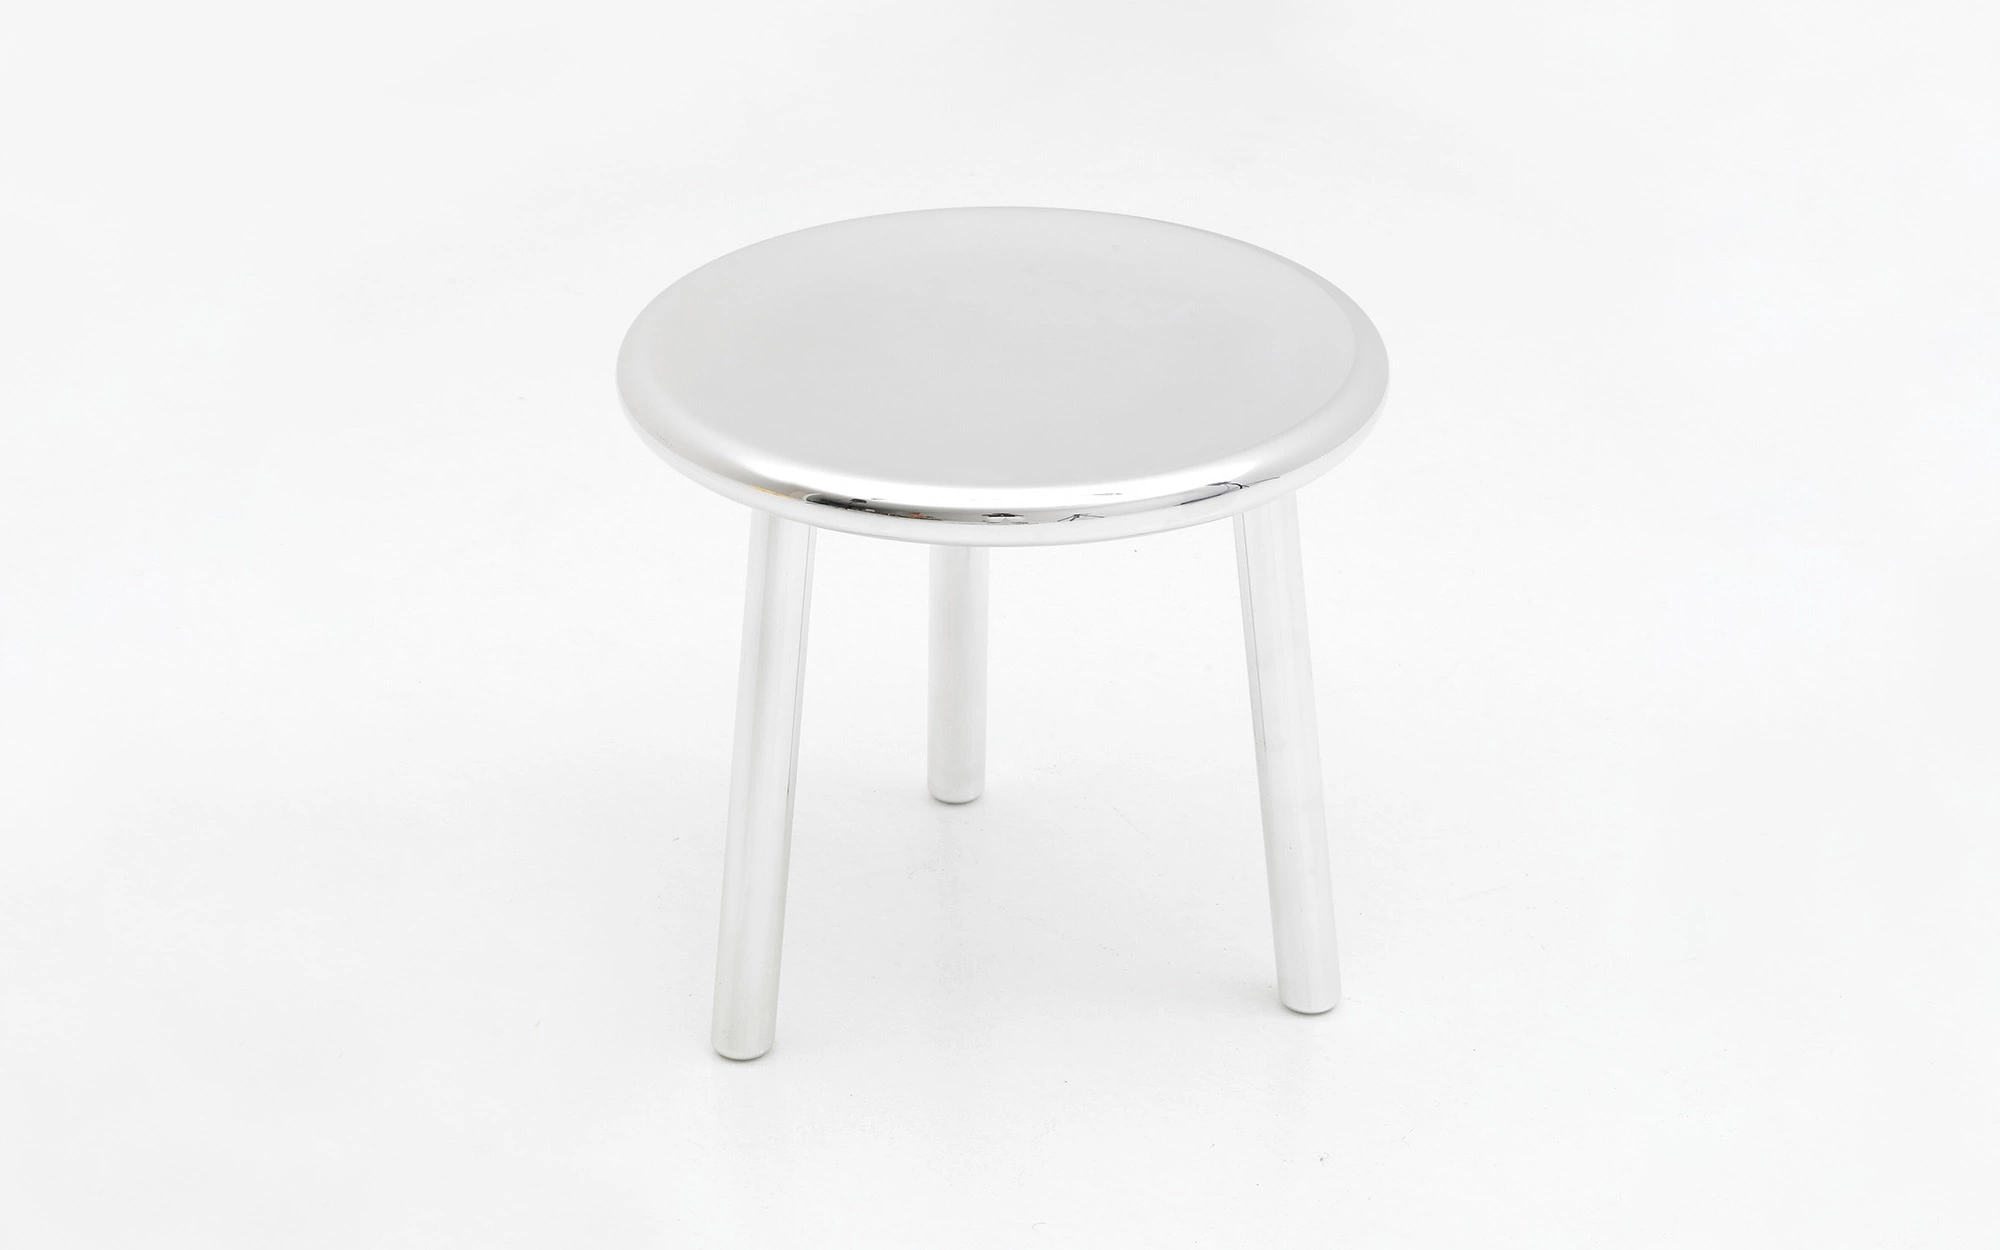 3-legged stool - Jasper Morrison - Console - Galerie kreo